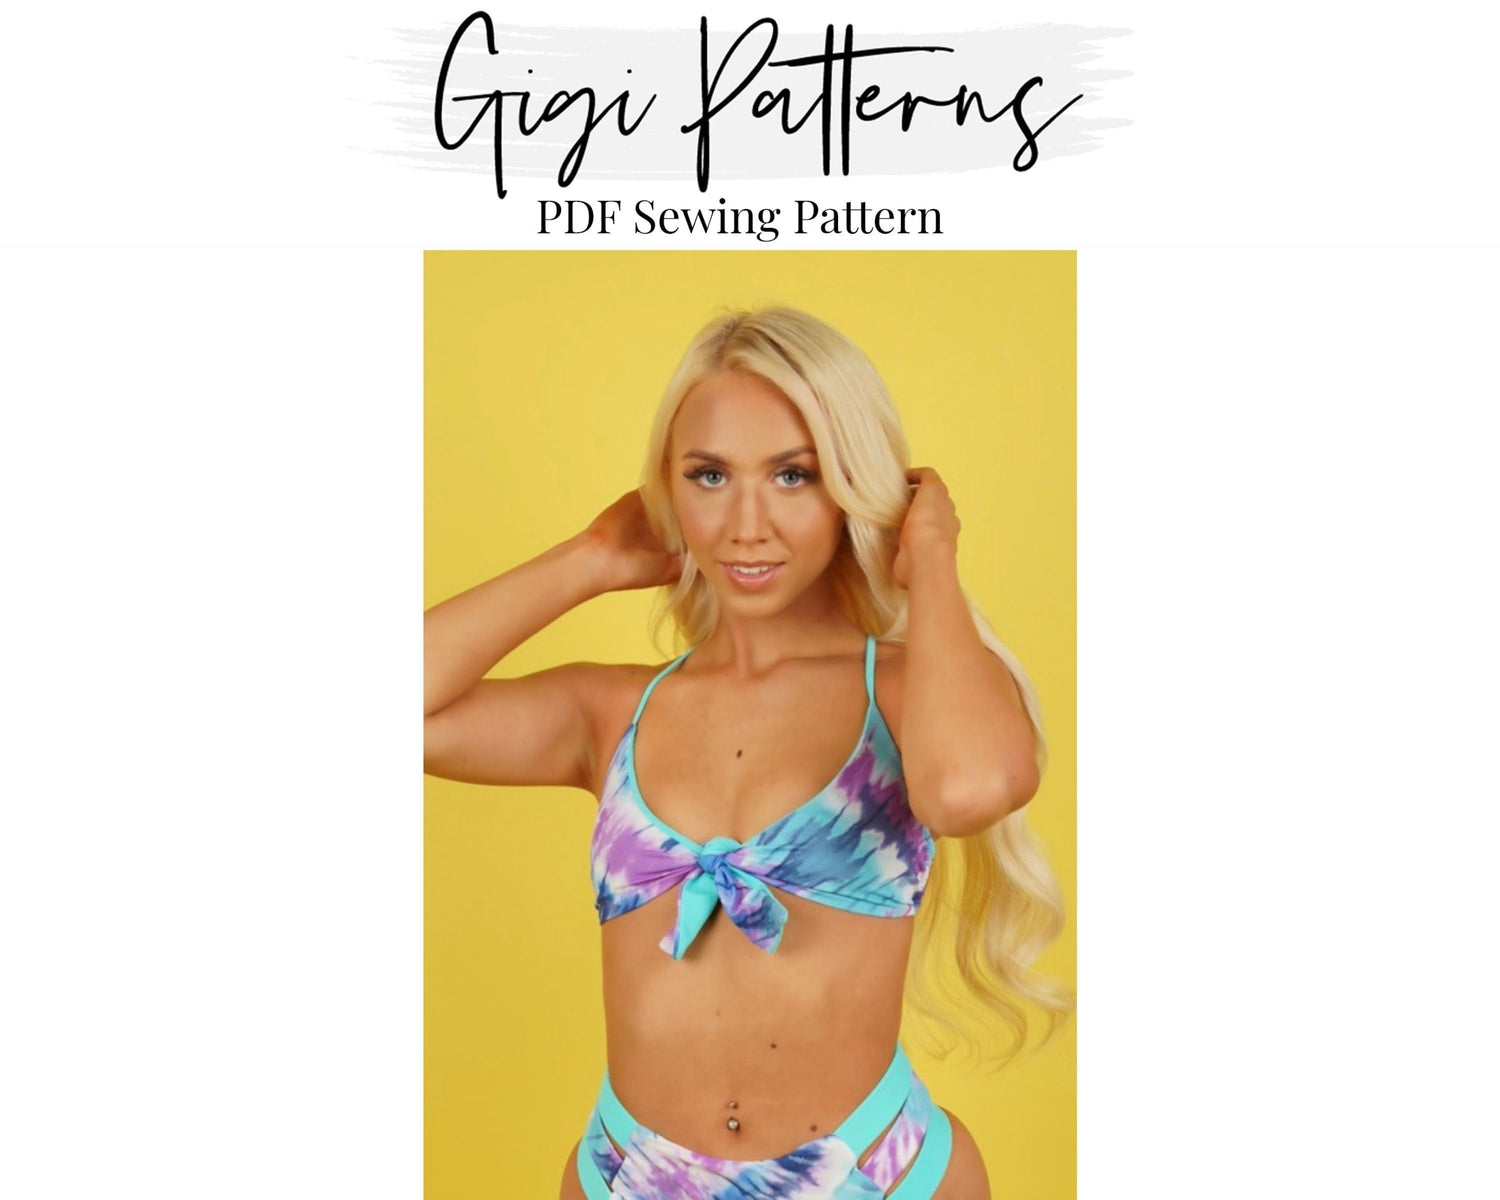 Women's Strapless Bandeau Bikini Top Sewing Pattern, Ladies Downloadable  Printable PDF Sewing Pattern Size XS-XXL 